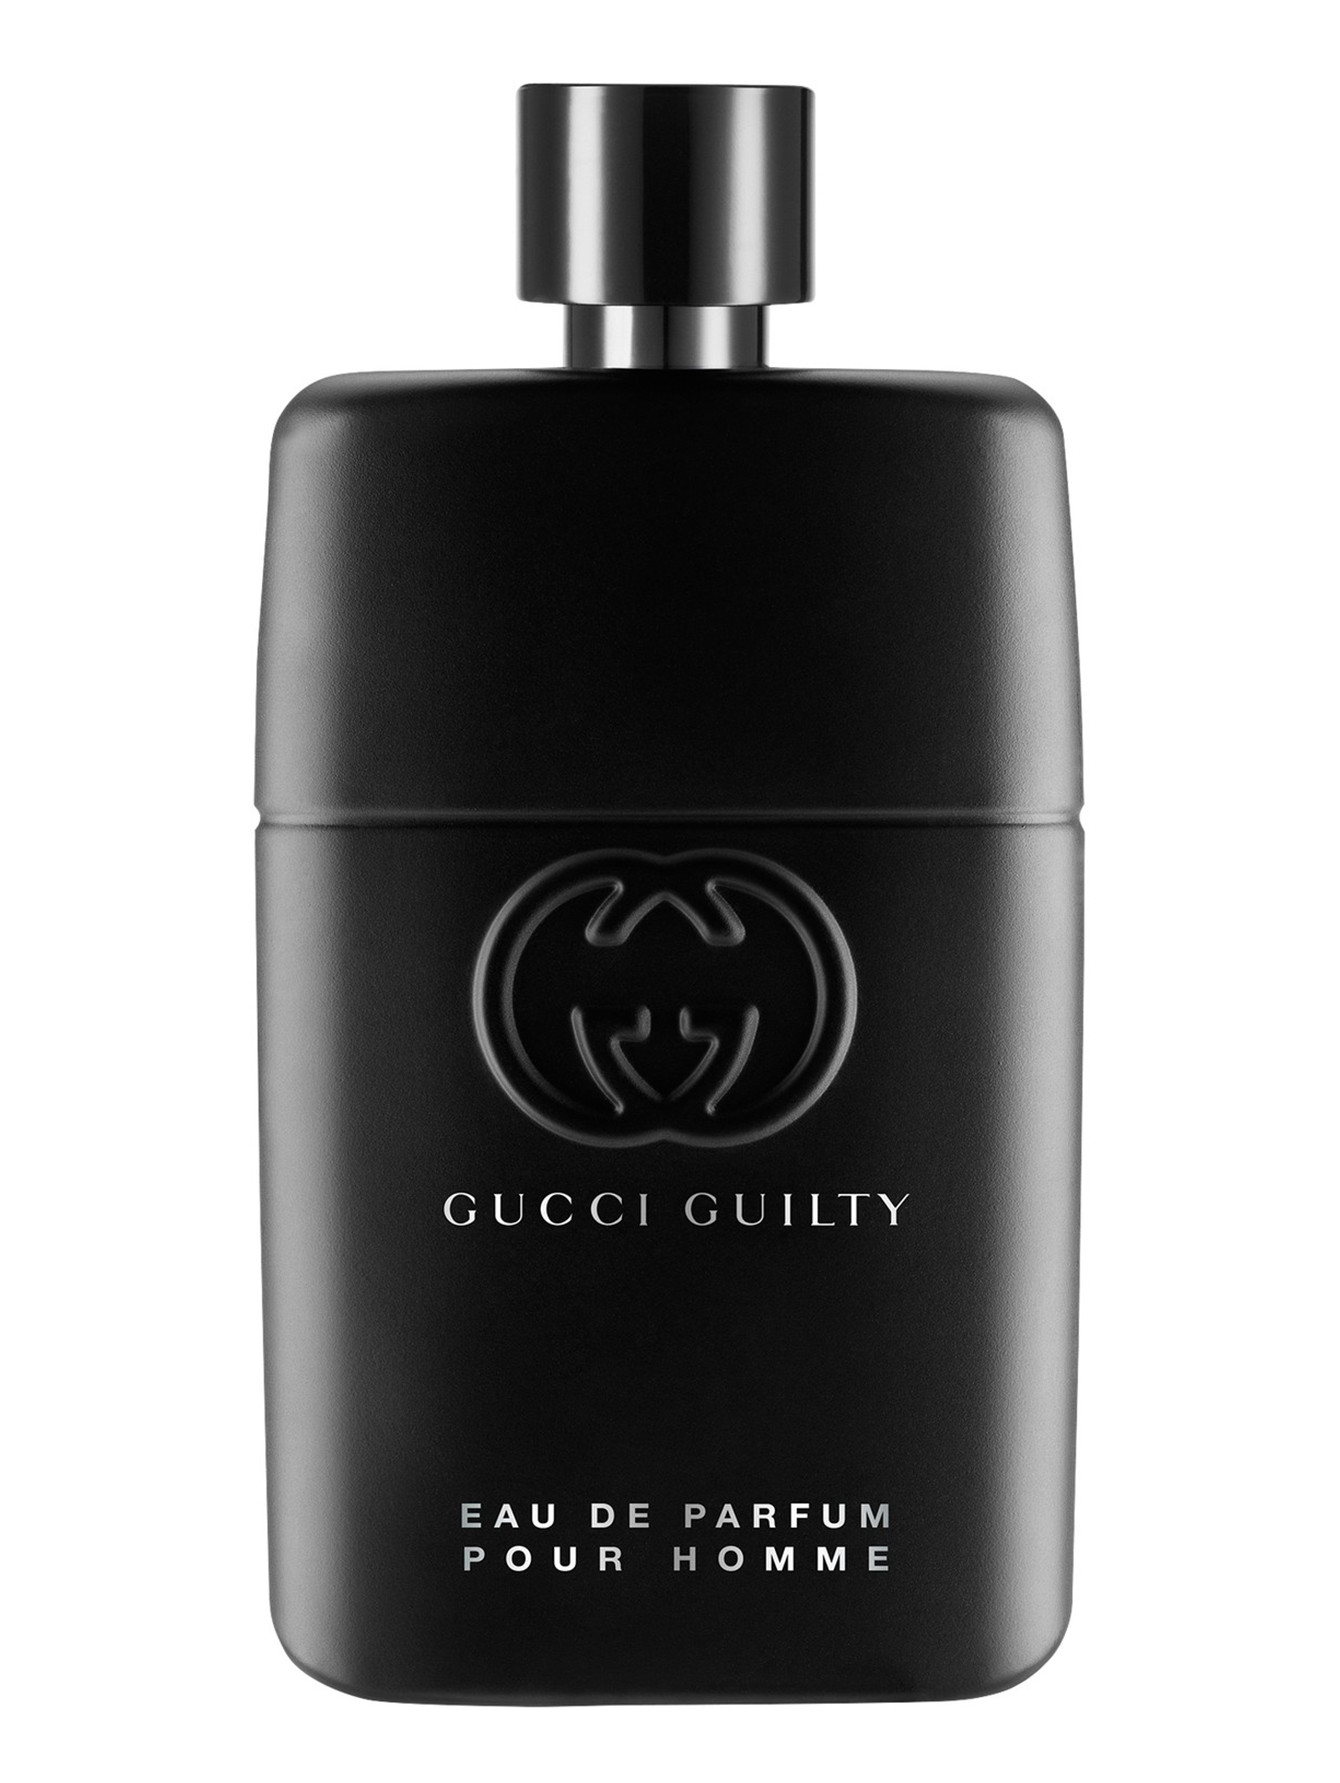 Guilty Pour Homme Мужская парфюмерная вода 90 мл - Общий вид